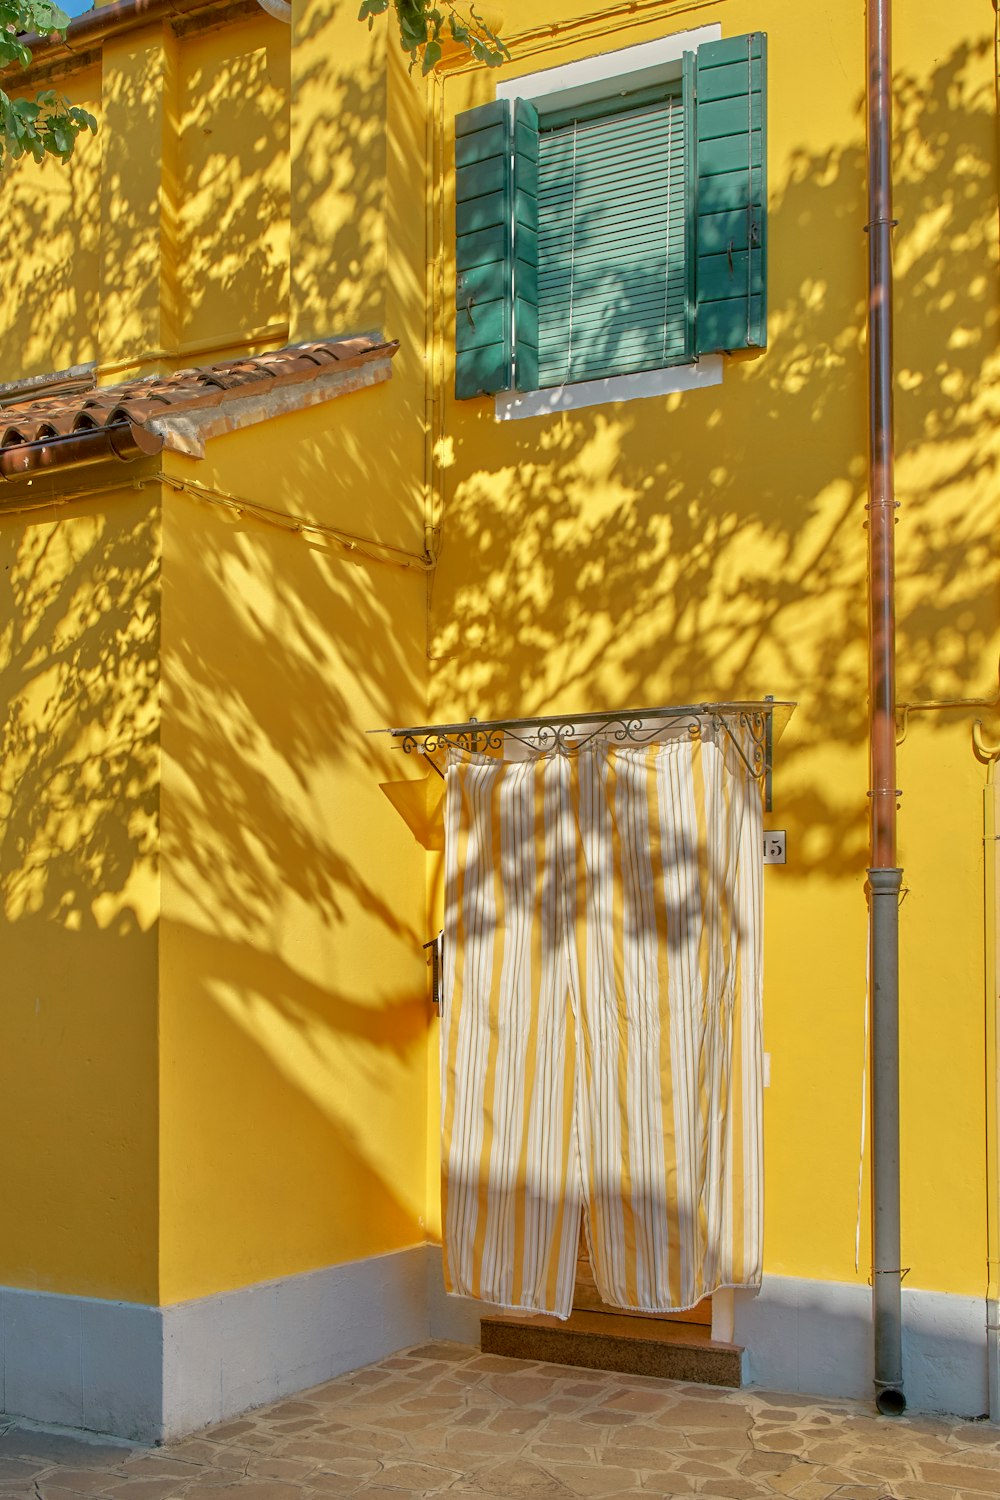 Edificio de hormigón pintado de amarillo